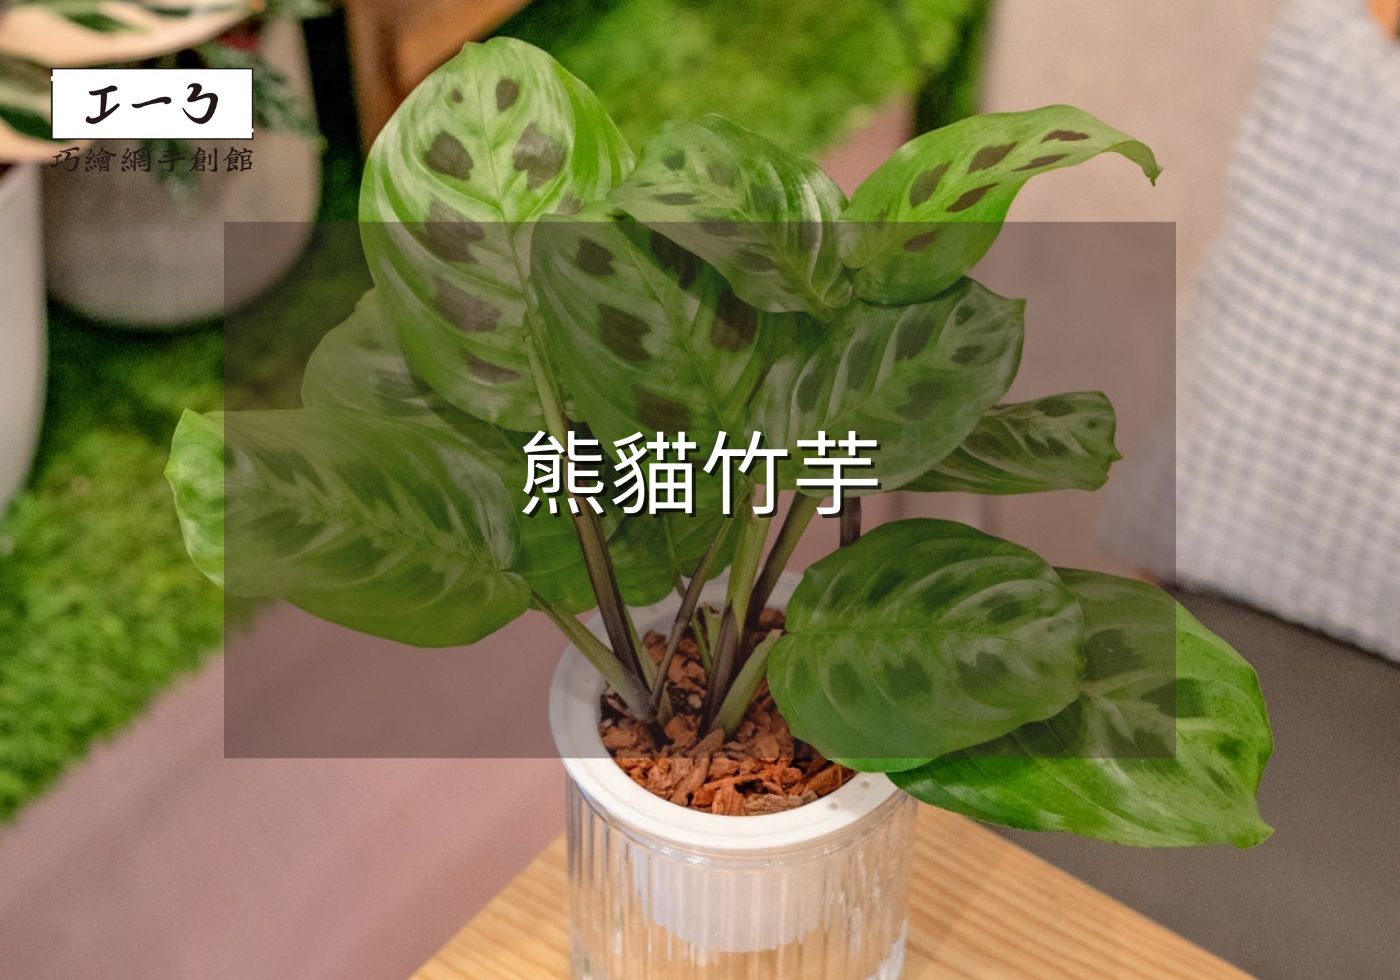 您目前正在查看 從新手到專家的熊貓竹芋完全養護指南